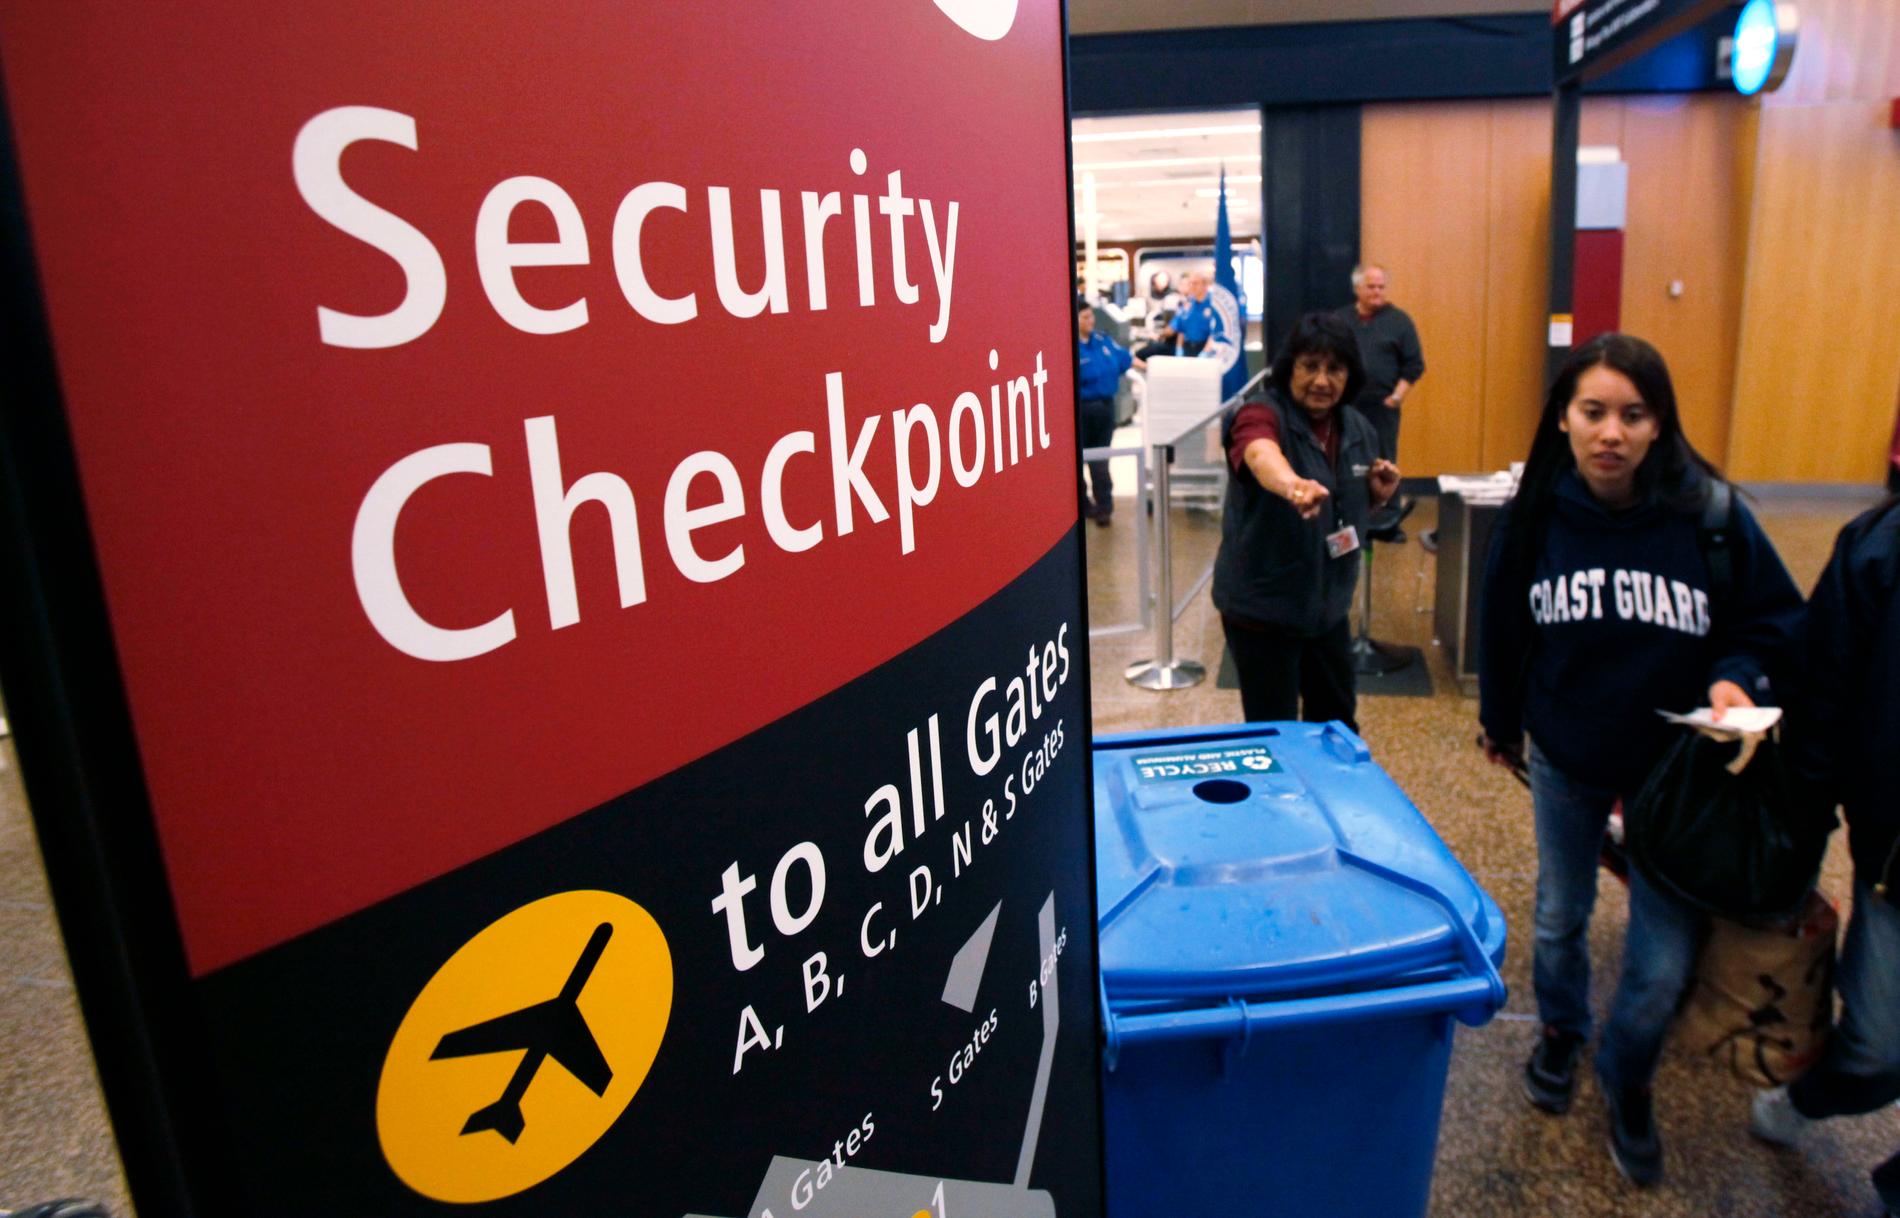 på bara 15 månader har 350 resenärer med biljett stoppats i säkerhetskontroller på flygplatser i USA, misstäknta för terrorkopplingar.